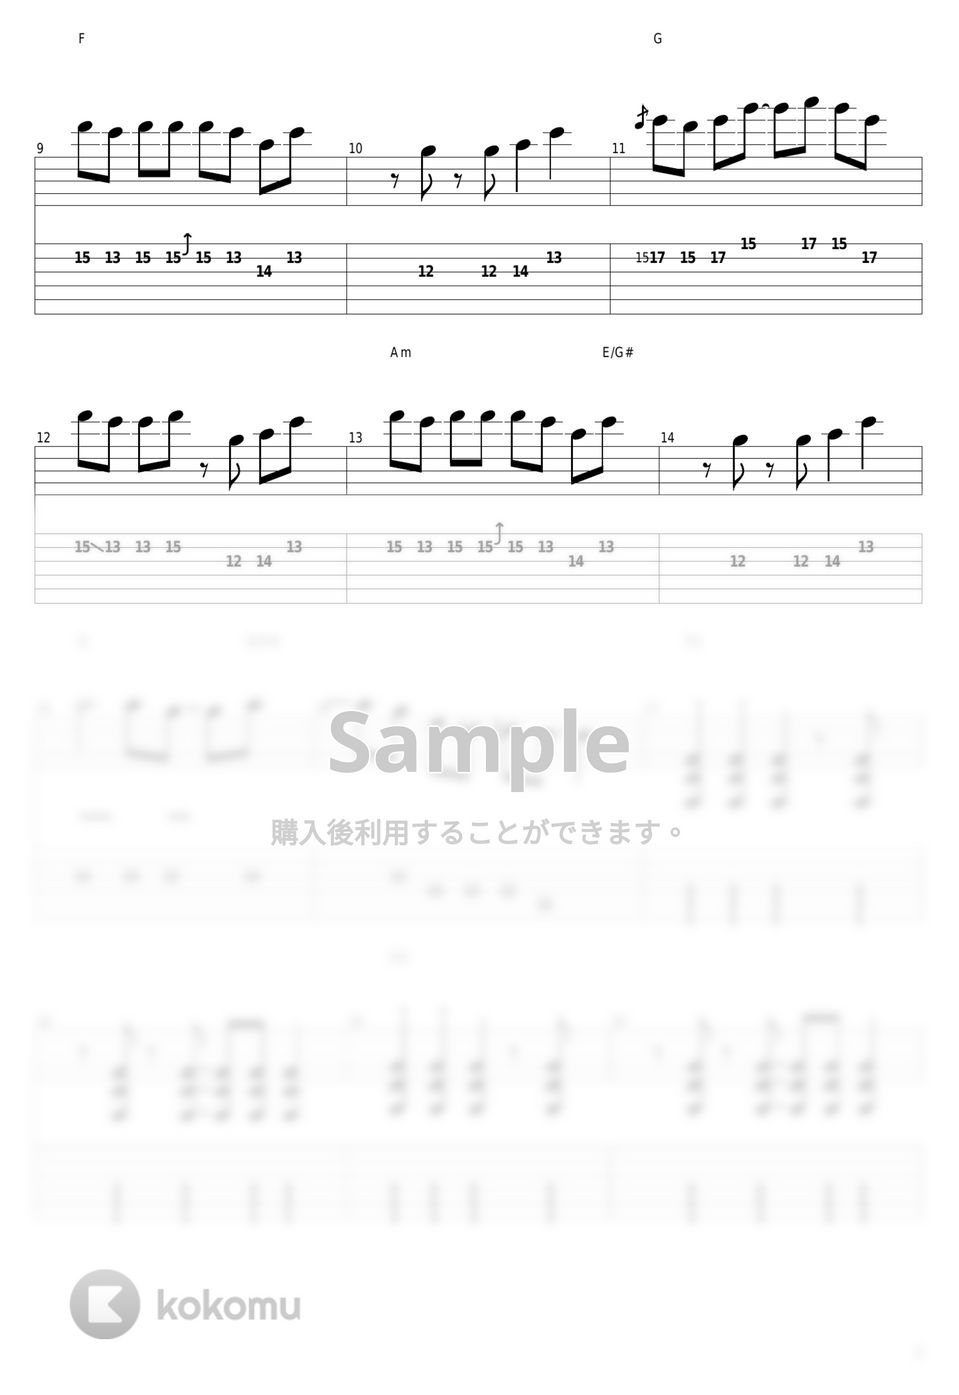 ヨルシカ - 言って。 by guitar cover with tab